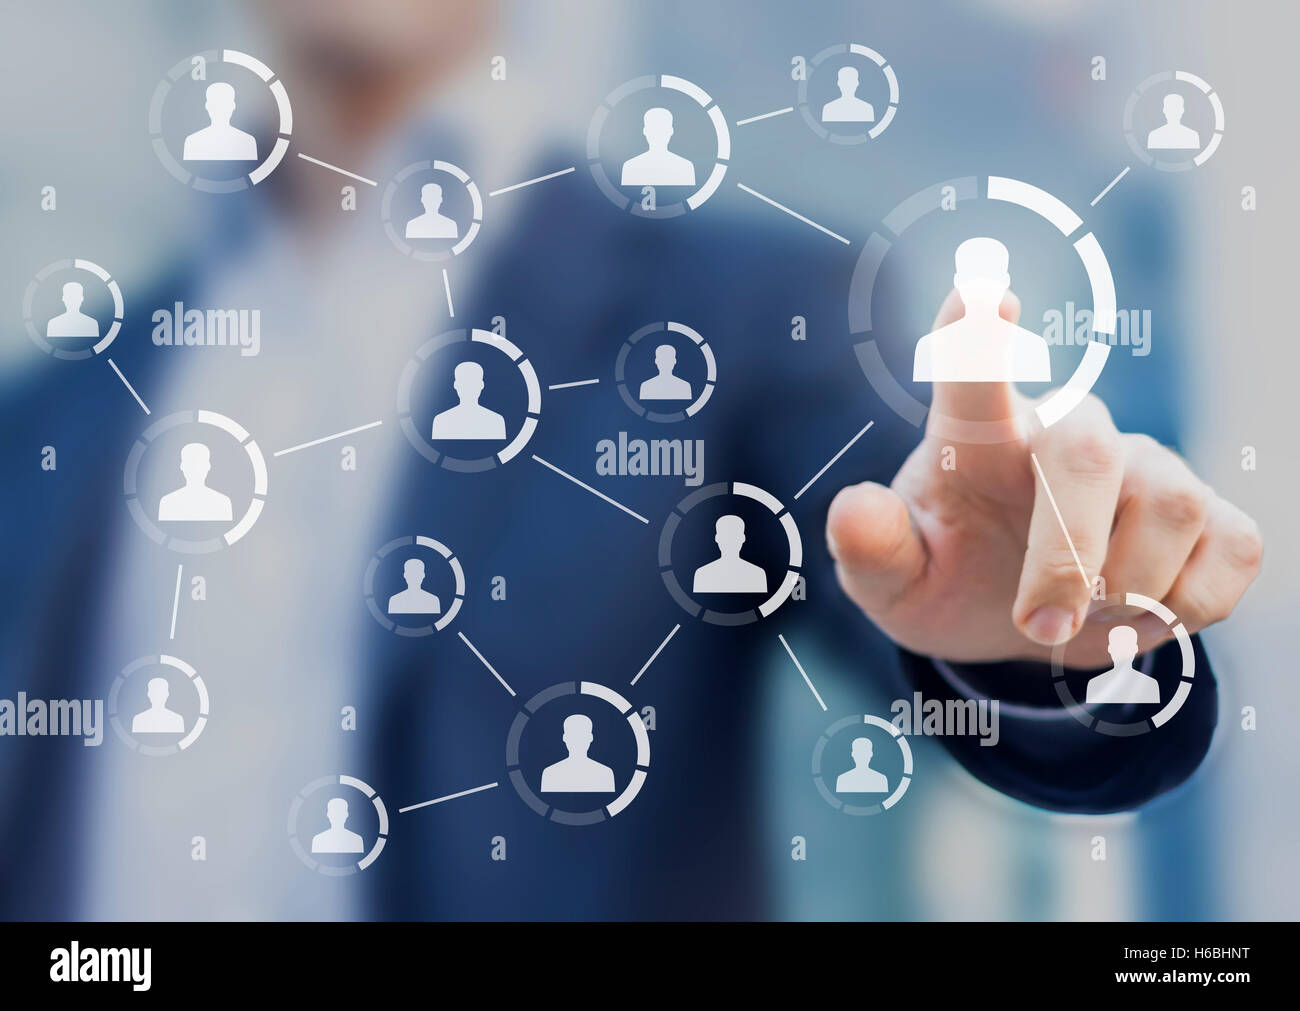 La estructura de la red social, mostrando conexiones entre los perfiles de la gente, interfaz virtual con una persona en segundo plano. Foto de stock